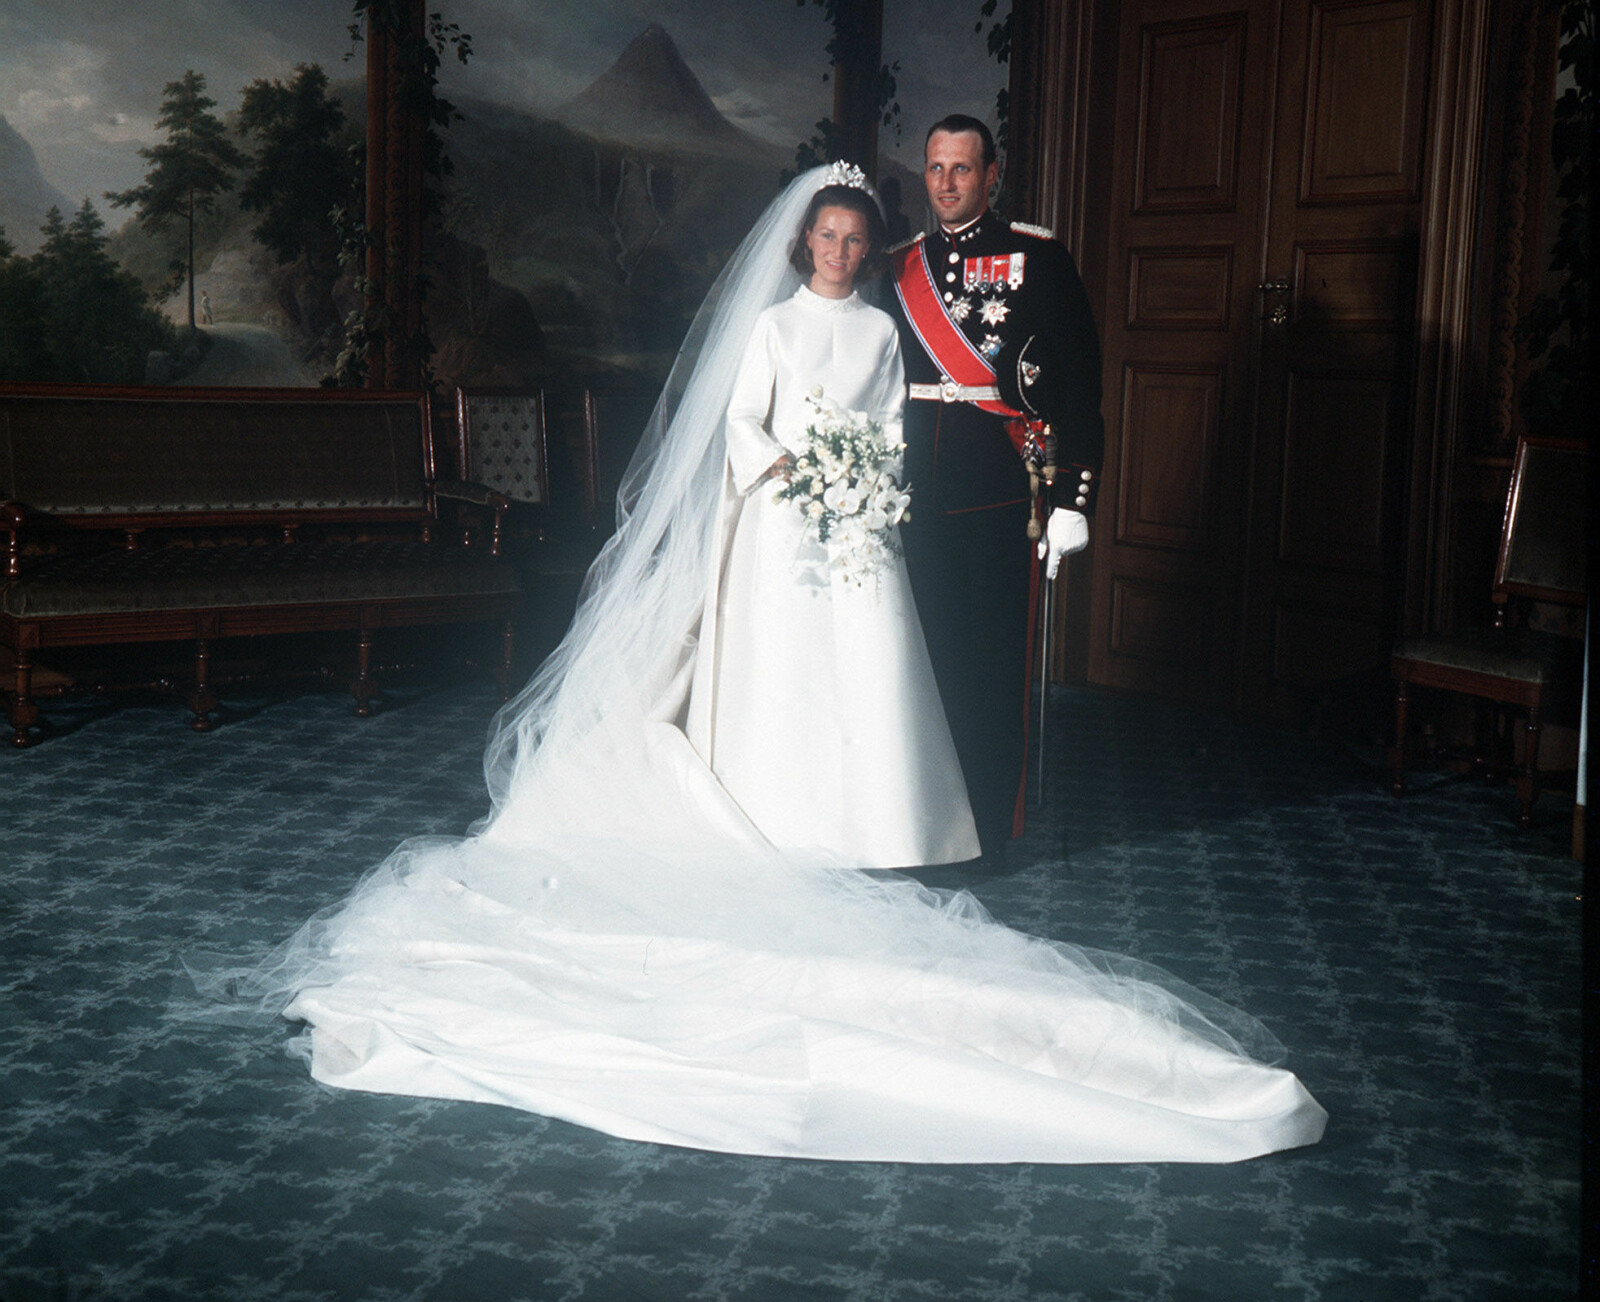 HISTORISK: Harald og Sonja ga hverandre sitt ja i august 1968, og Harald brøt dermed den kongelige tradisjonen da han giftet seg med en helt vanlig jente, og ikke en 
kongelig. Her under den offisielle fotograferingen i fugleværelse på Slottet.